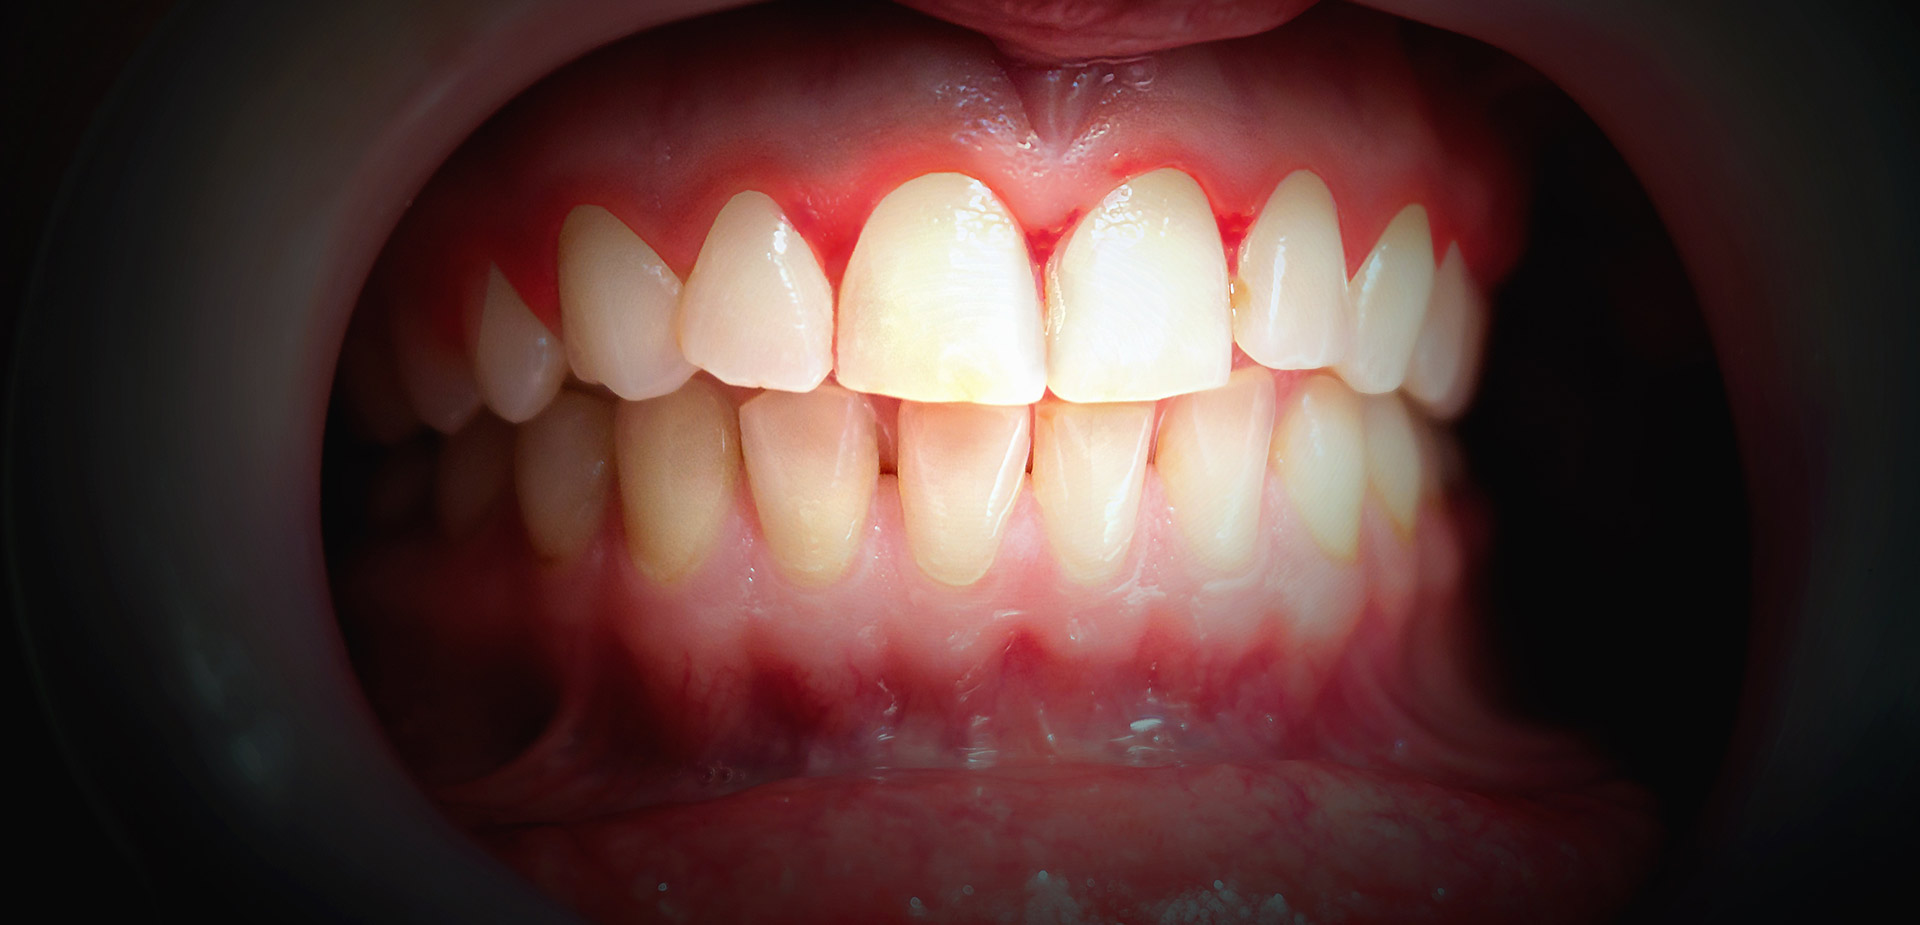 How to avoid gum disease